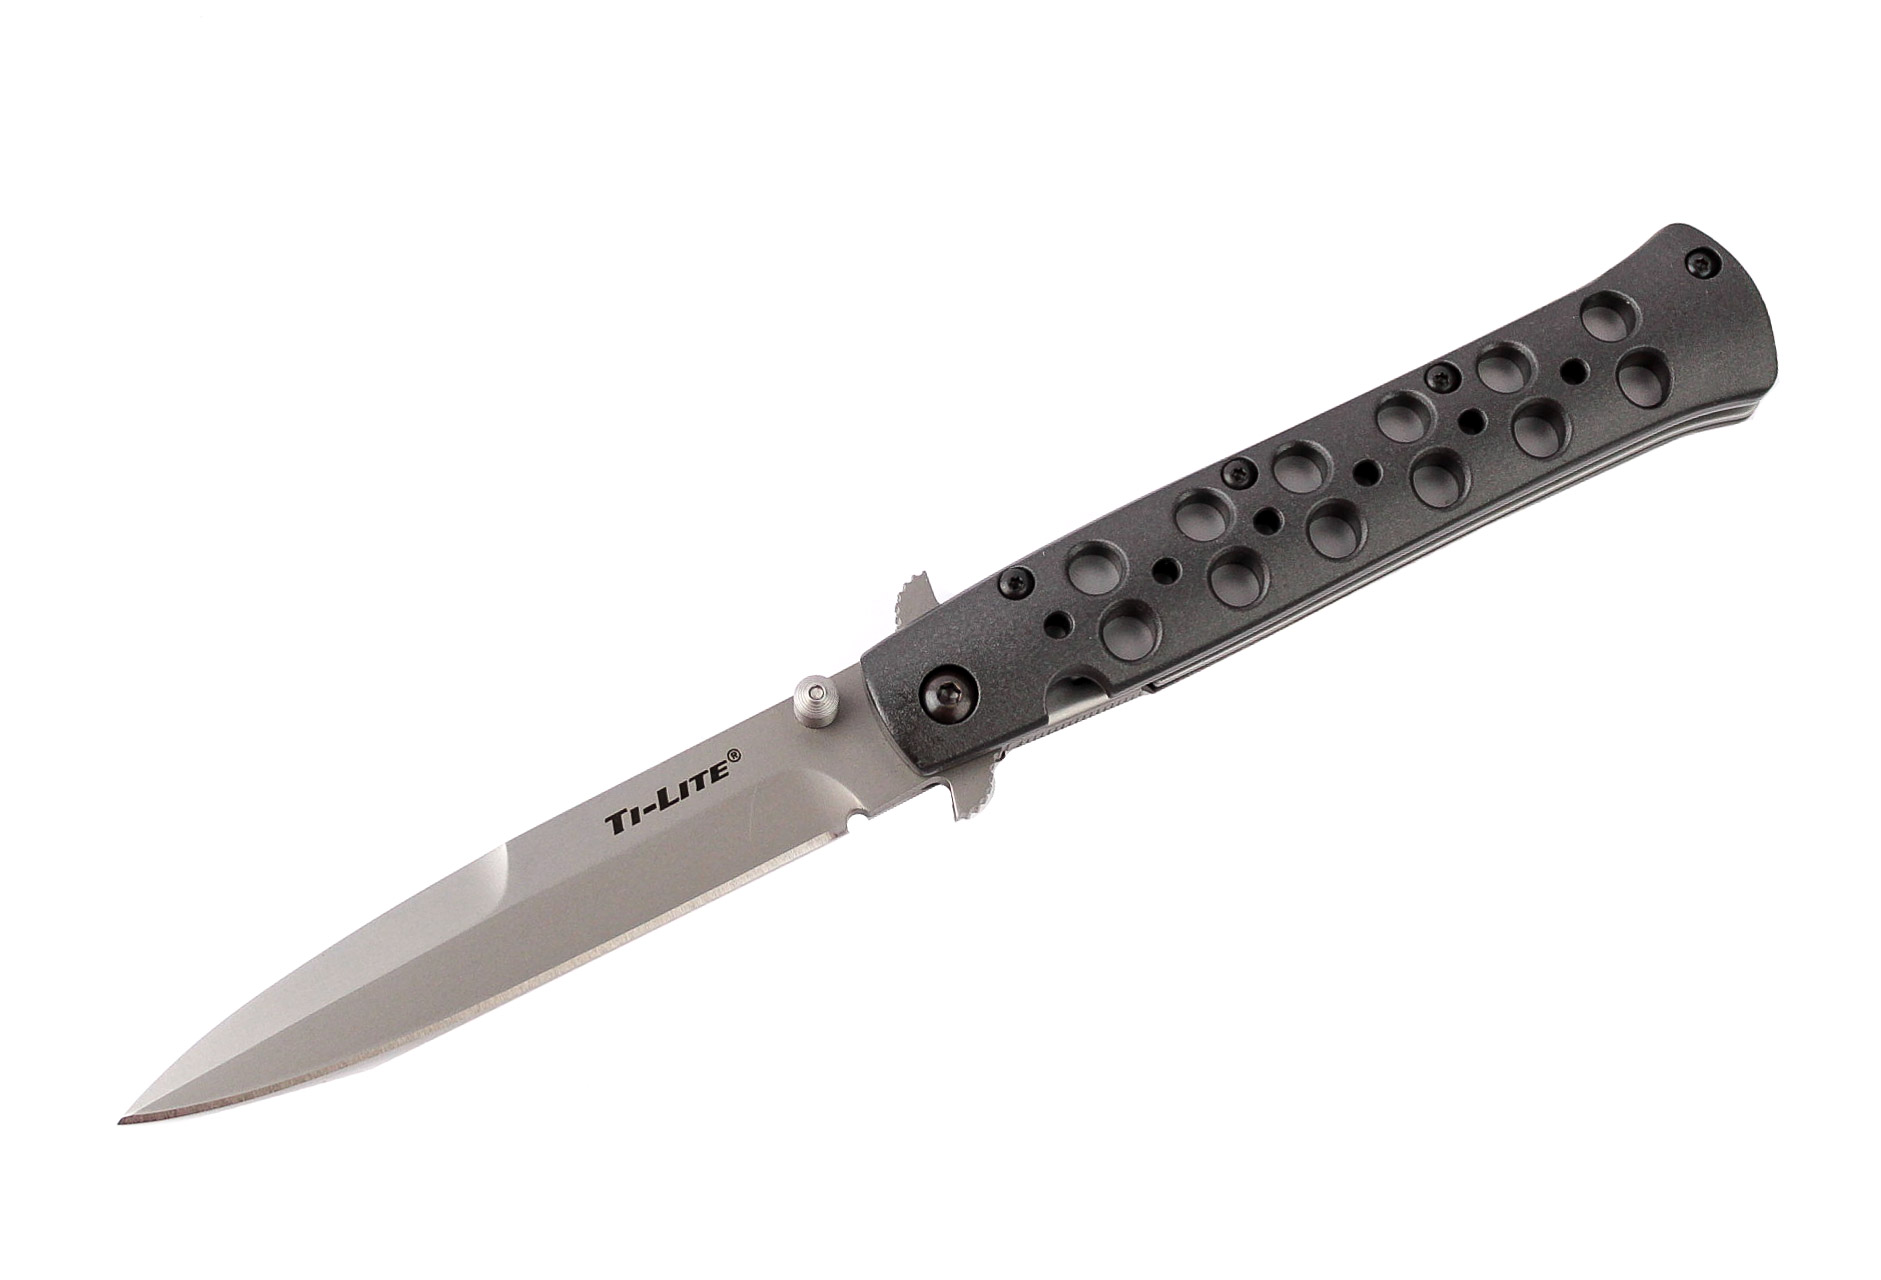 Нож Cold Steel Ti-Lite 4" складной S35VN рукоять алюминий - фото 1